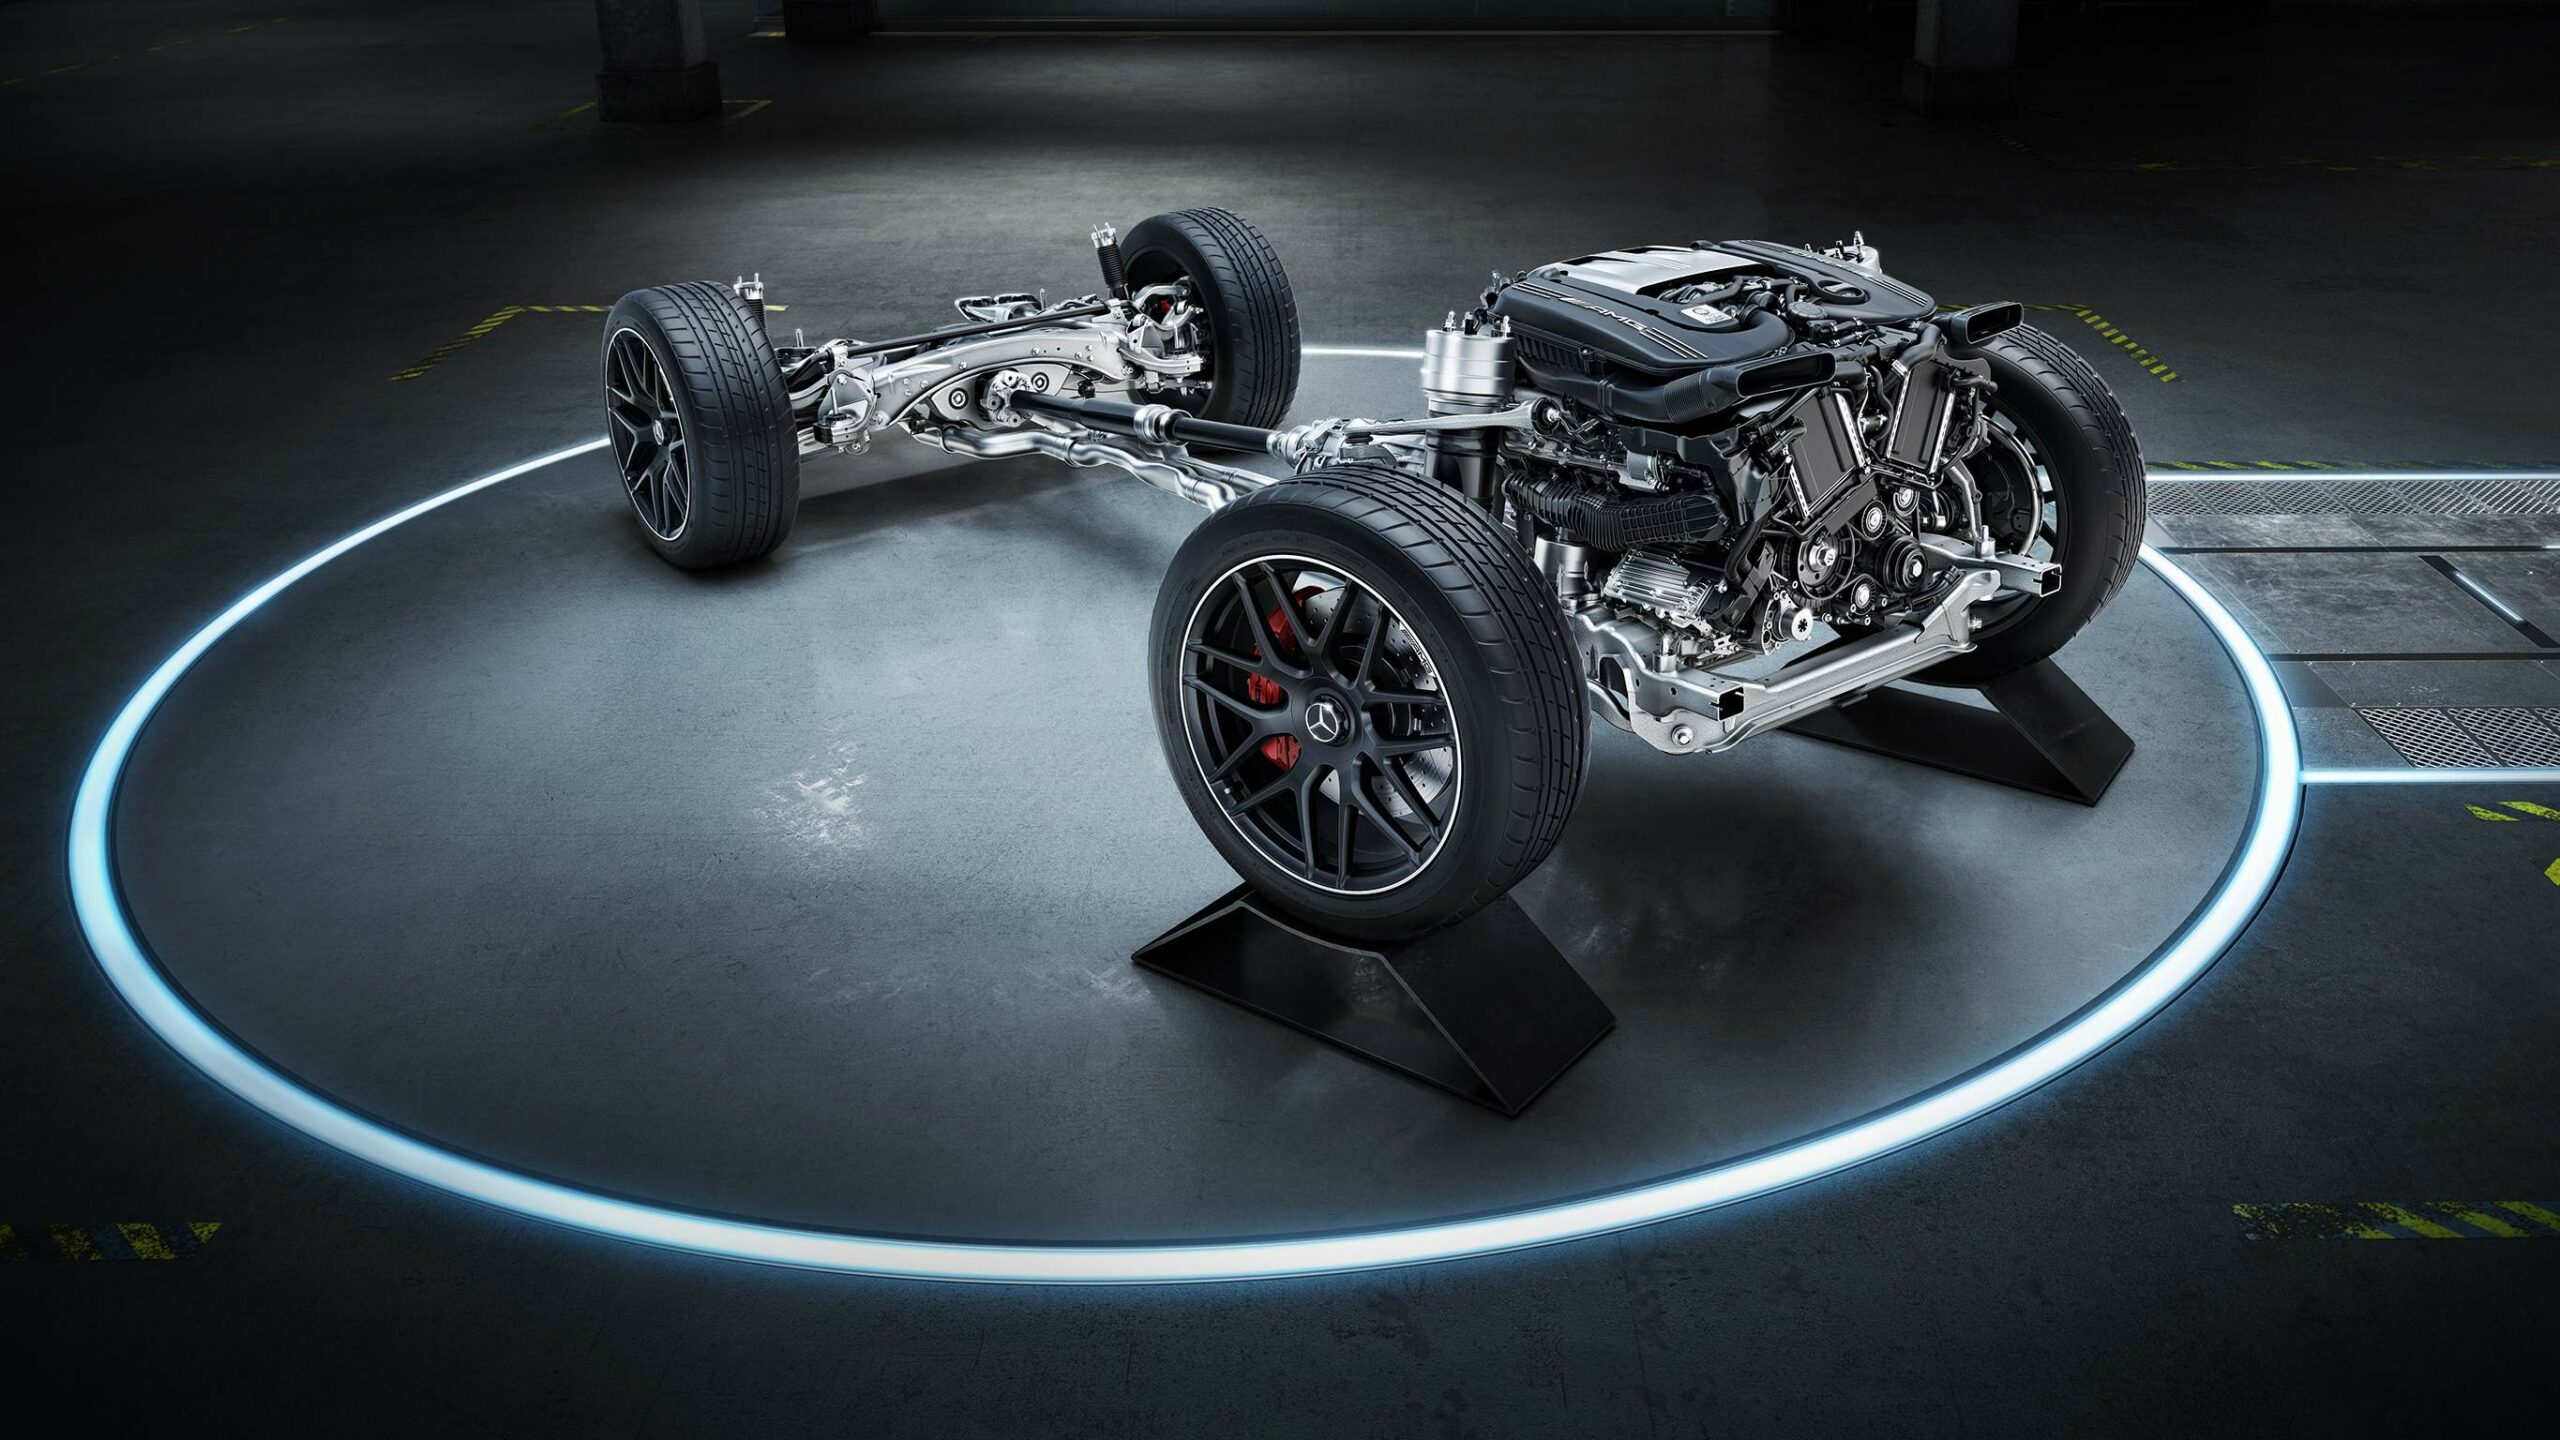 Chasis de la GLC Coupe AMG de Mercedes-Benz, suspensiones delanteras